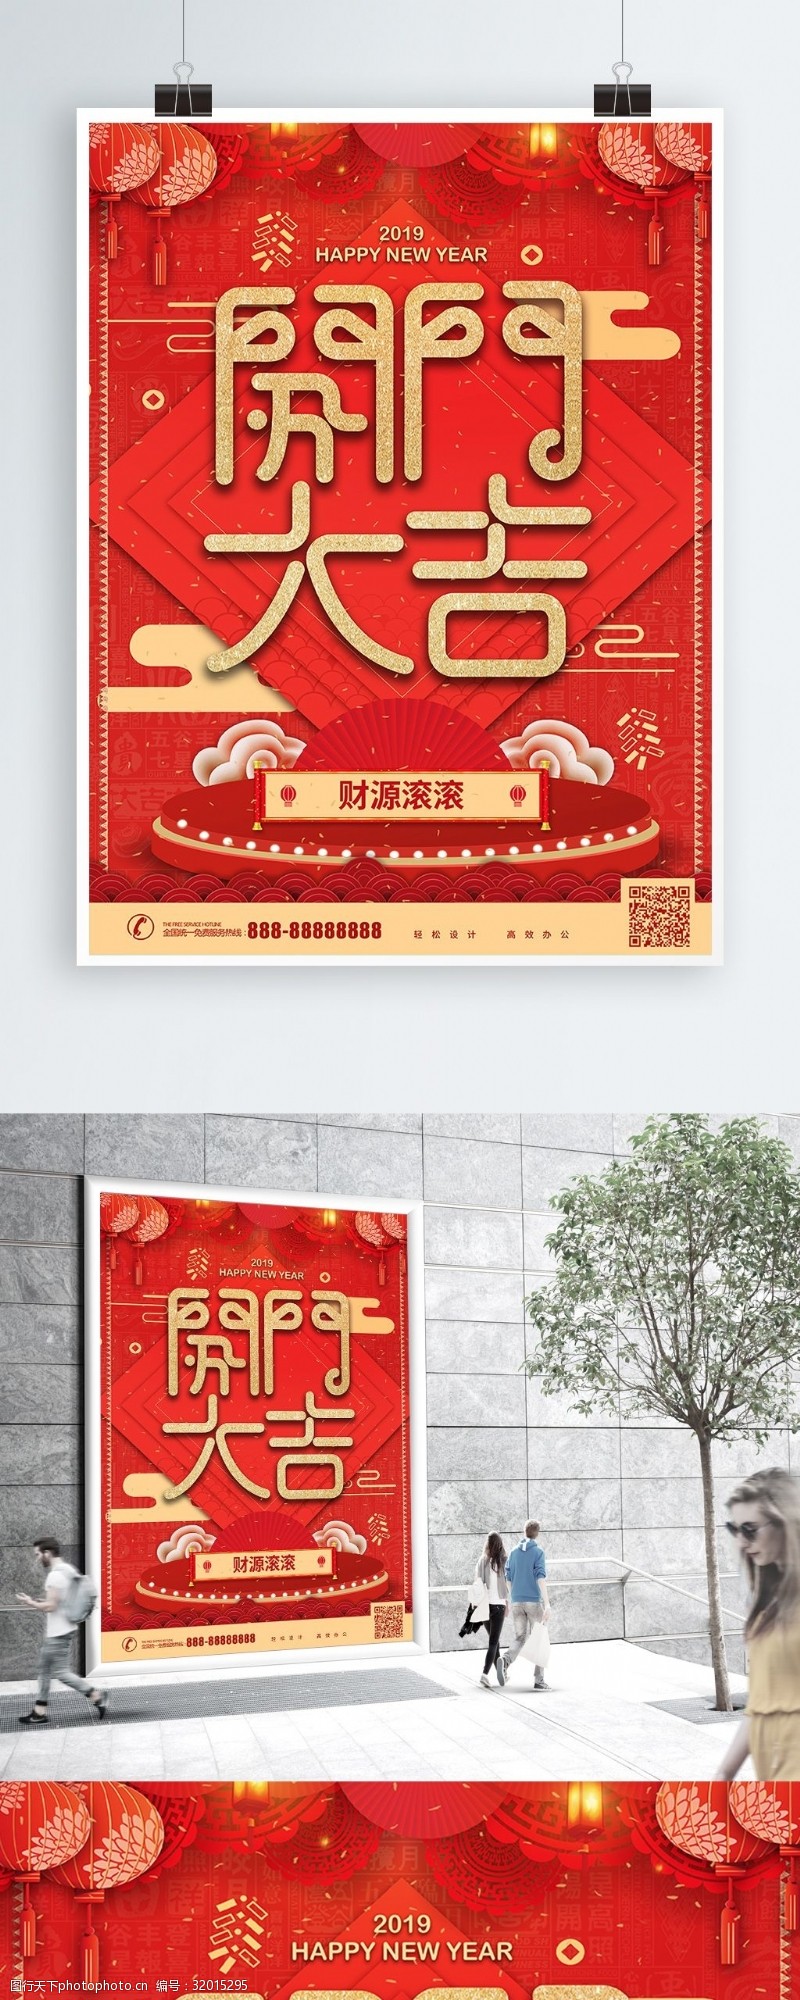 工业复古风红色喜庆开门红企业商业海报